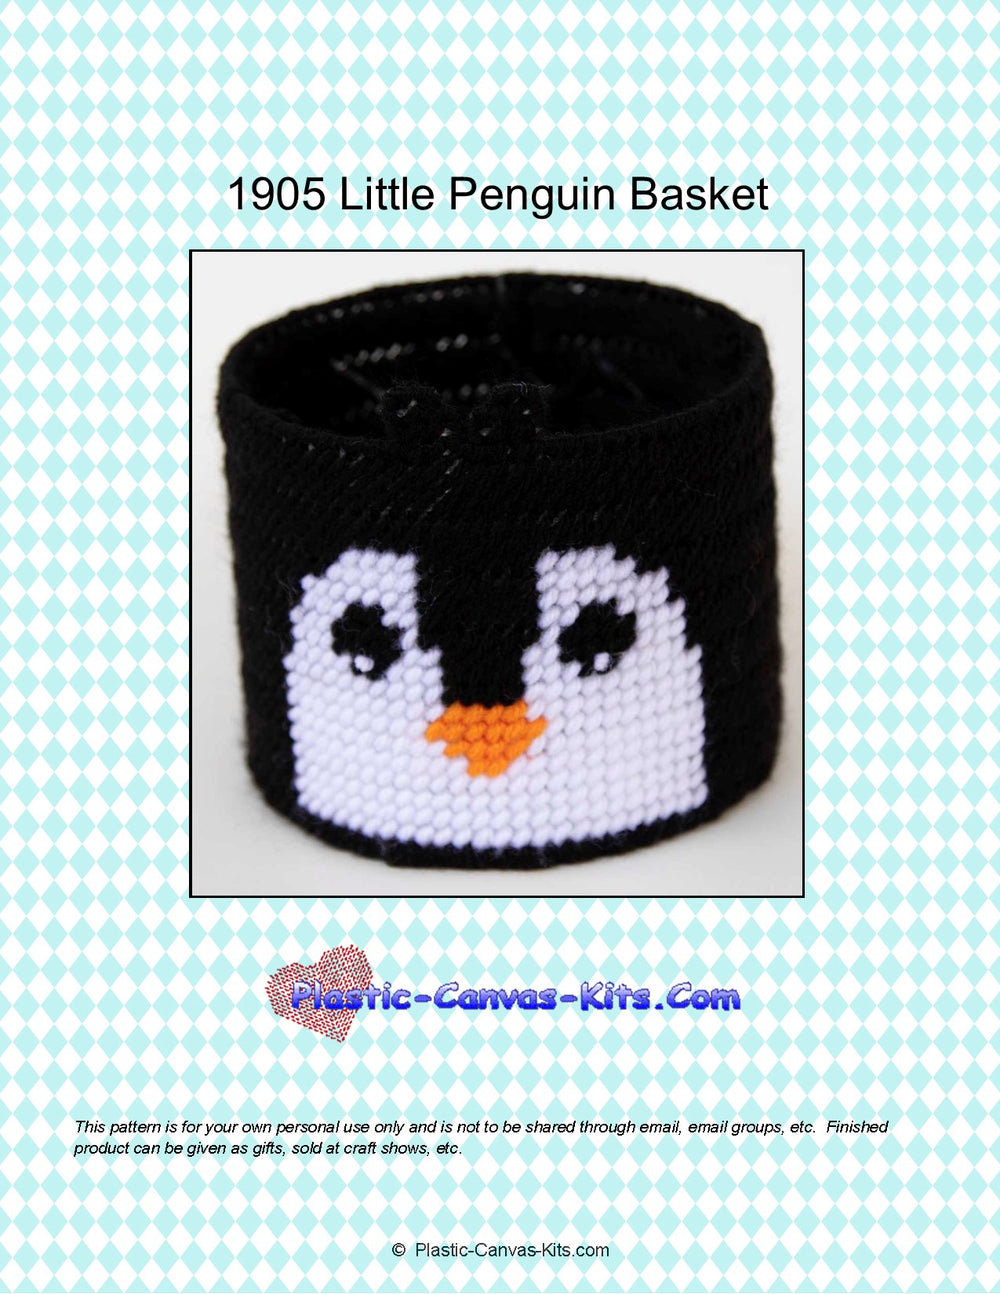 Little Penguin Basket